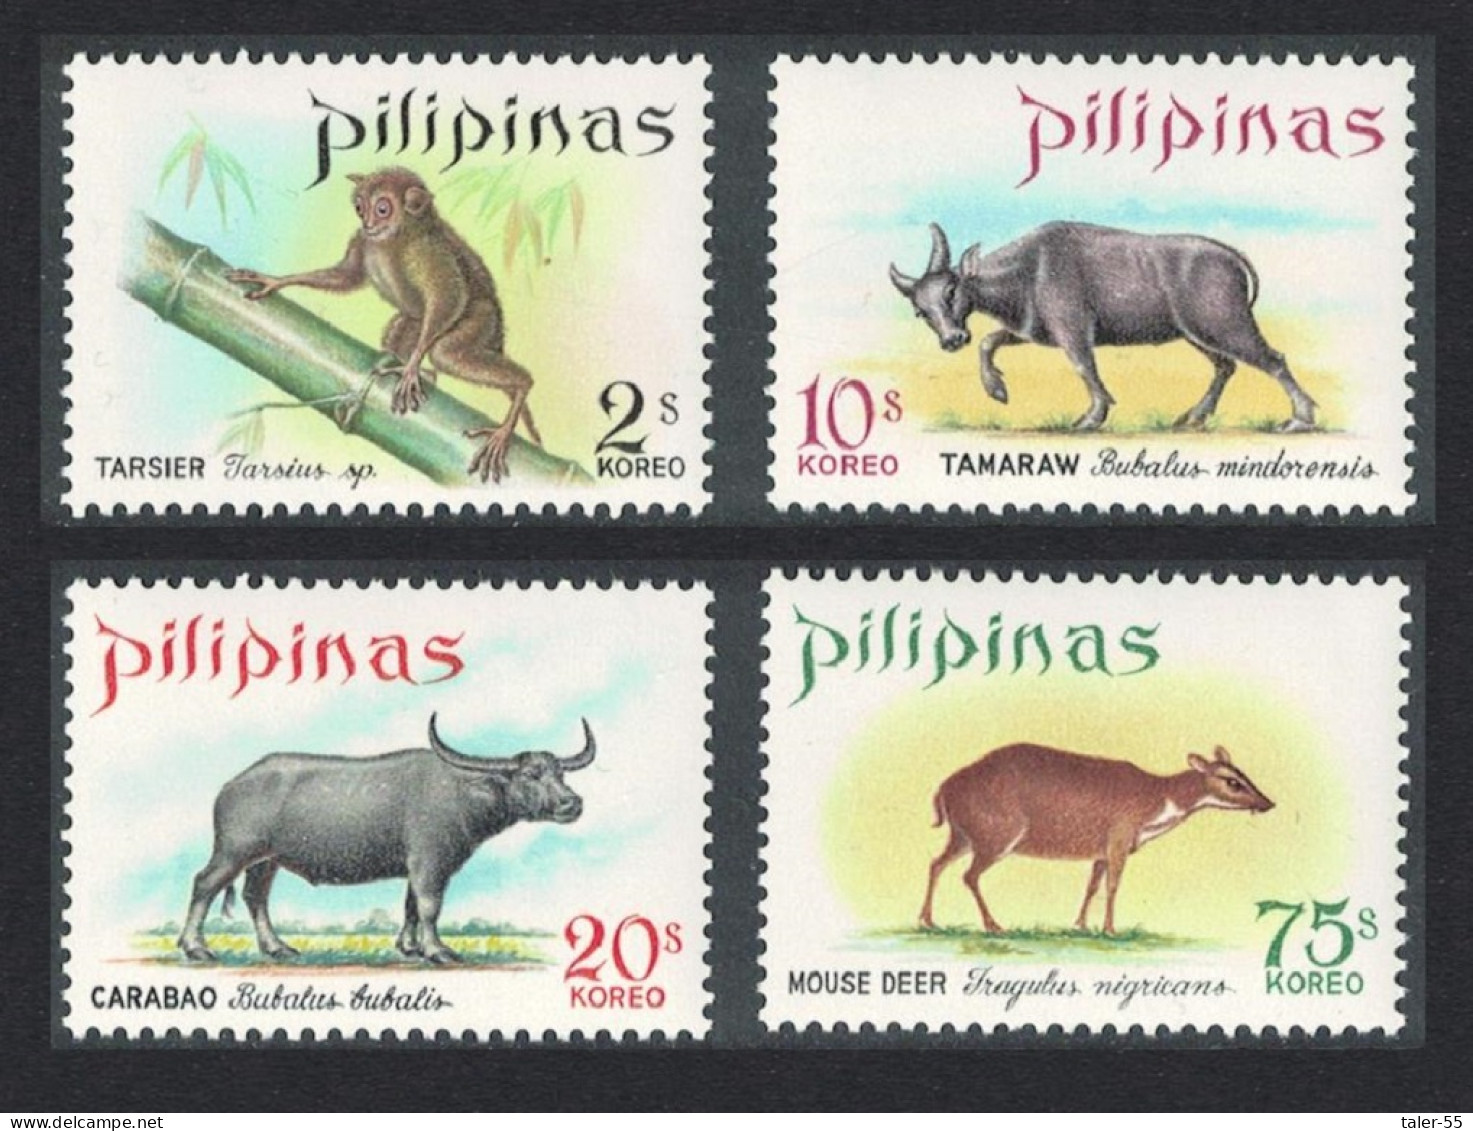 Philippines Wild Animals 4v 1969 MNH SG#1088-1091 - Philippinen